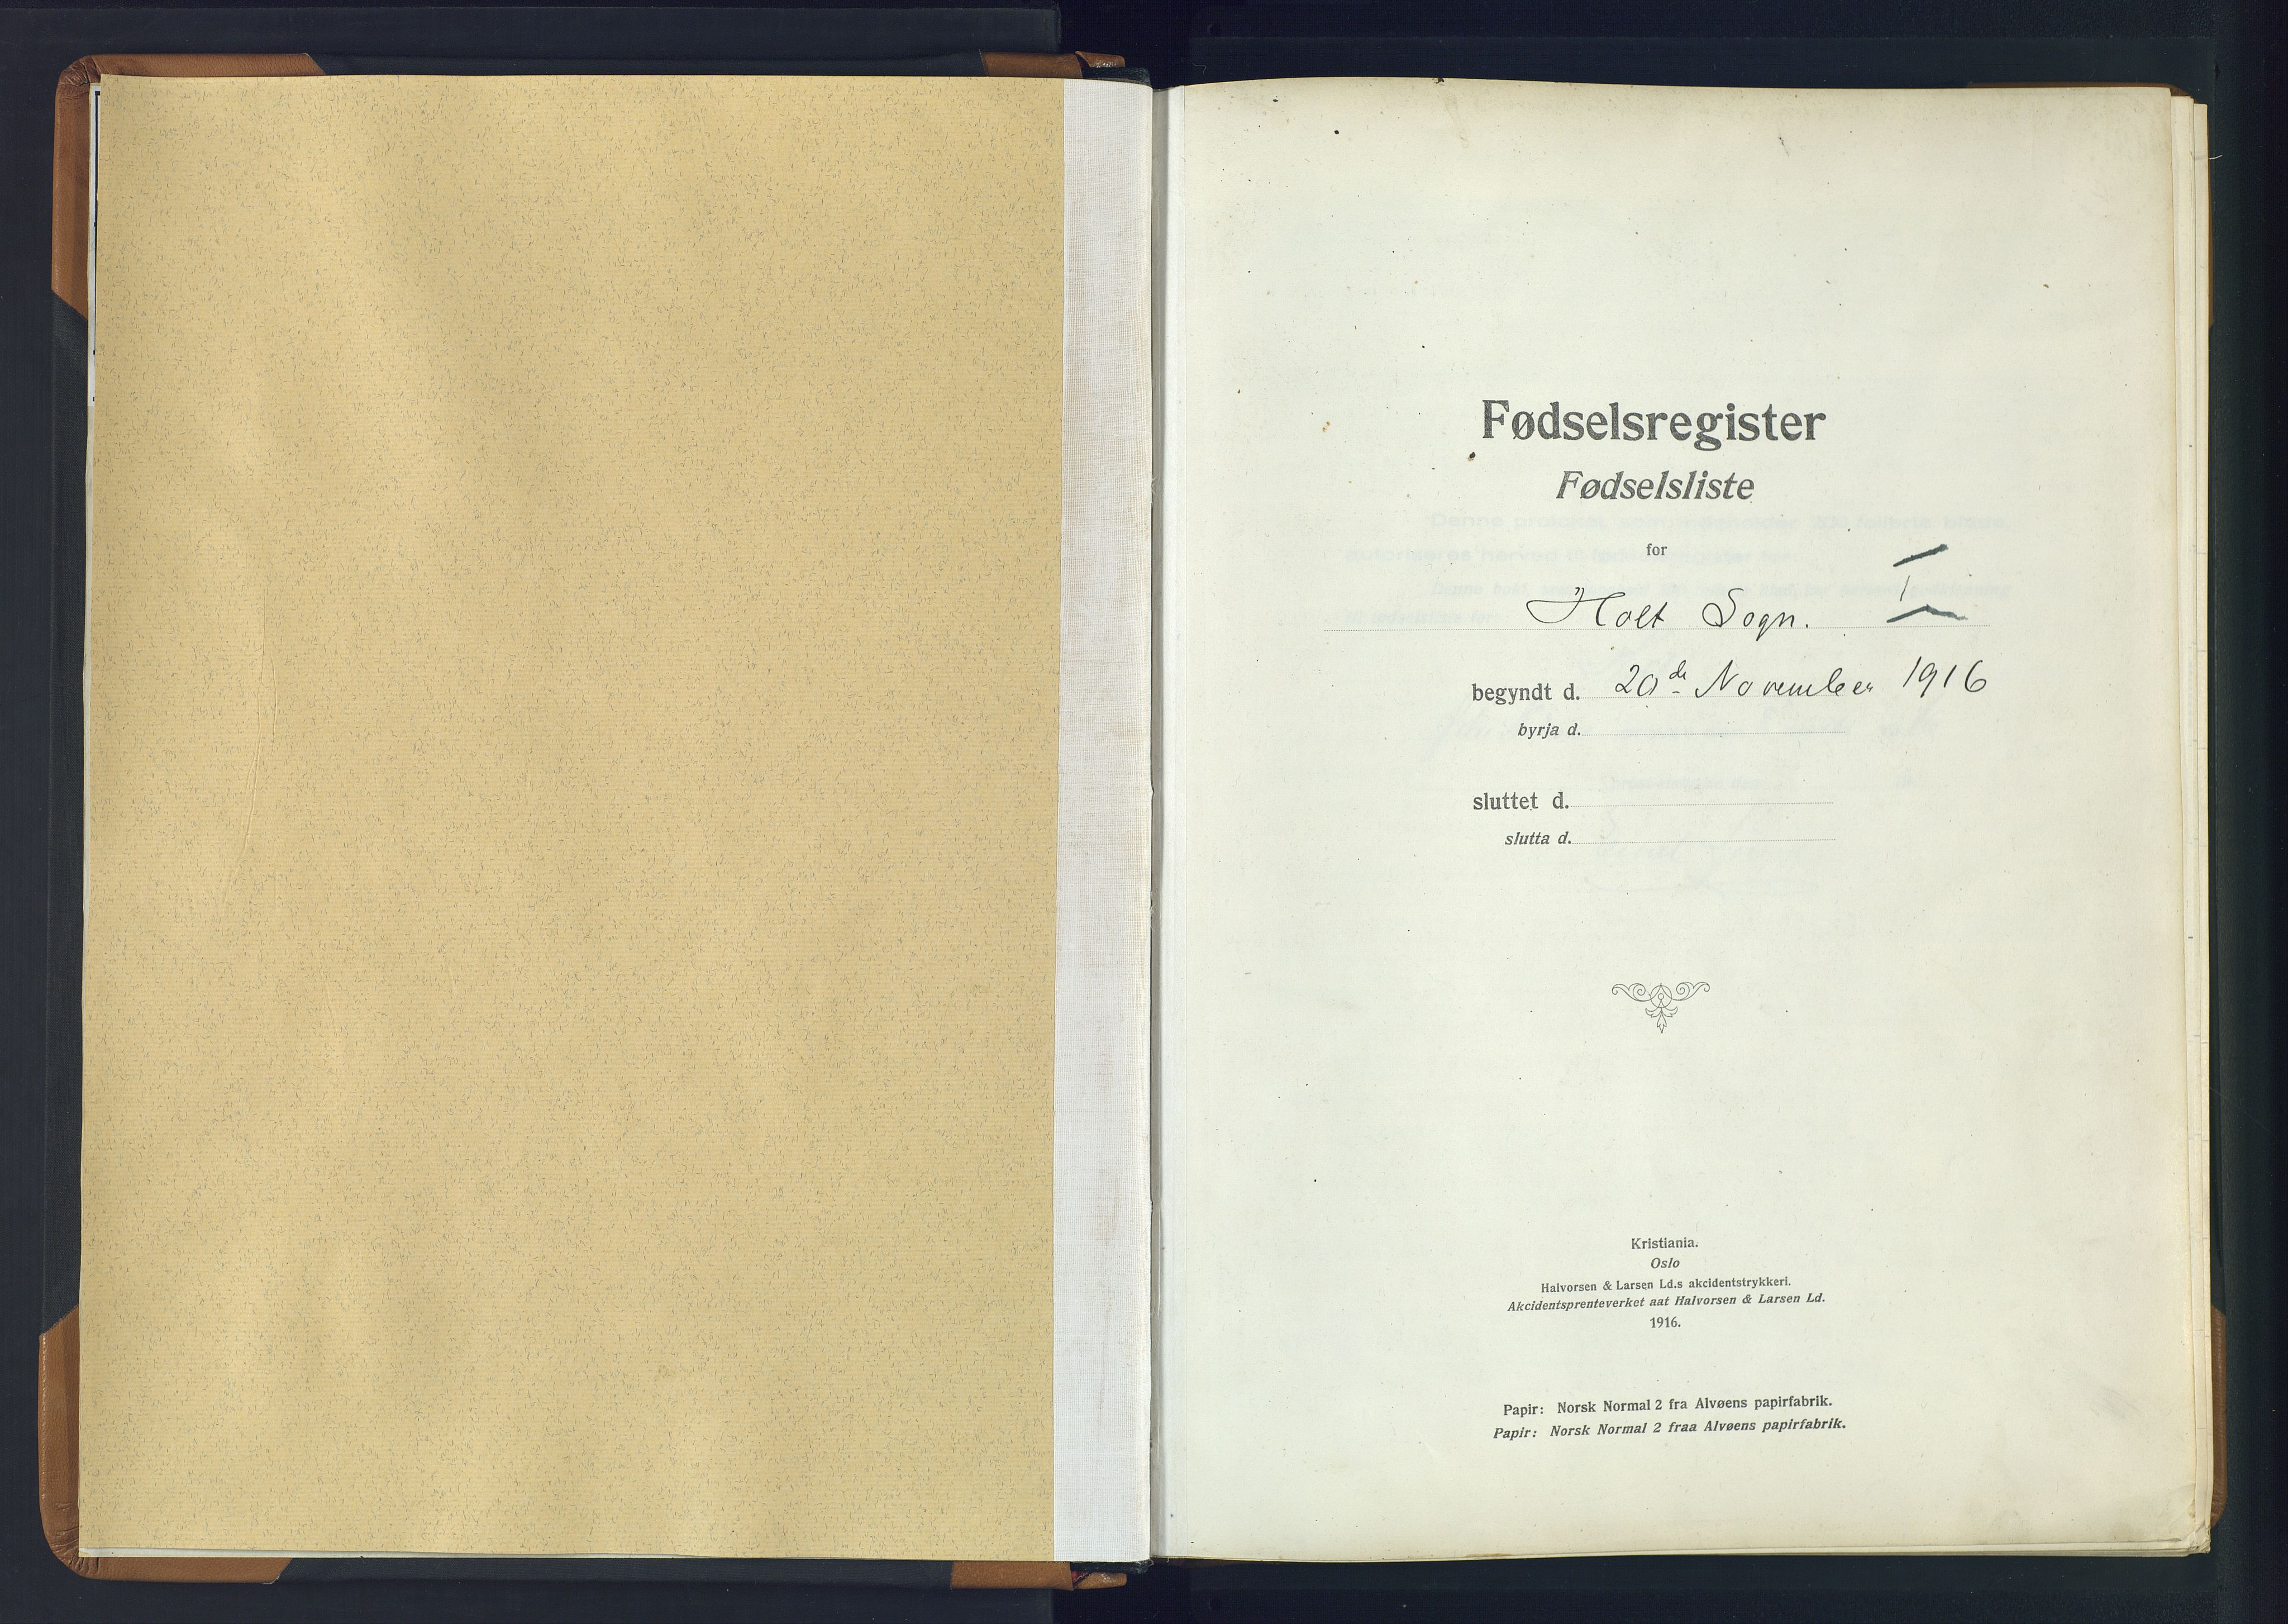 Holt sokneprestkontor, SAK/1111-0021/J/Ja/L0001: Fødselsregister nr. II.4.1, 1916-1946